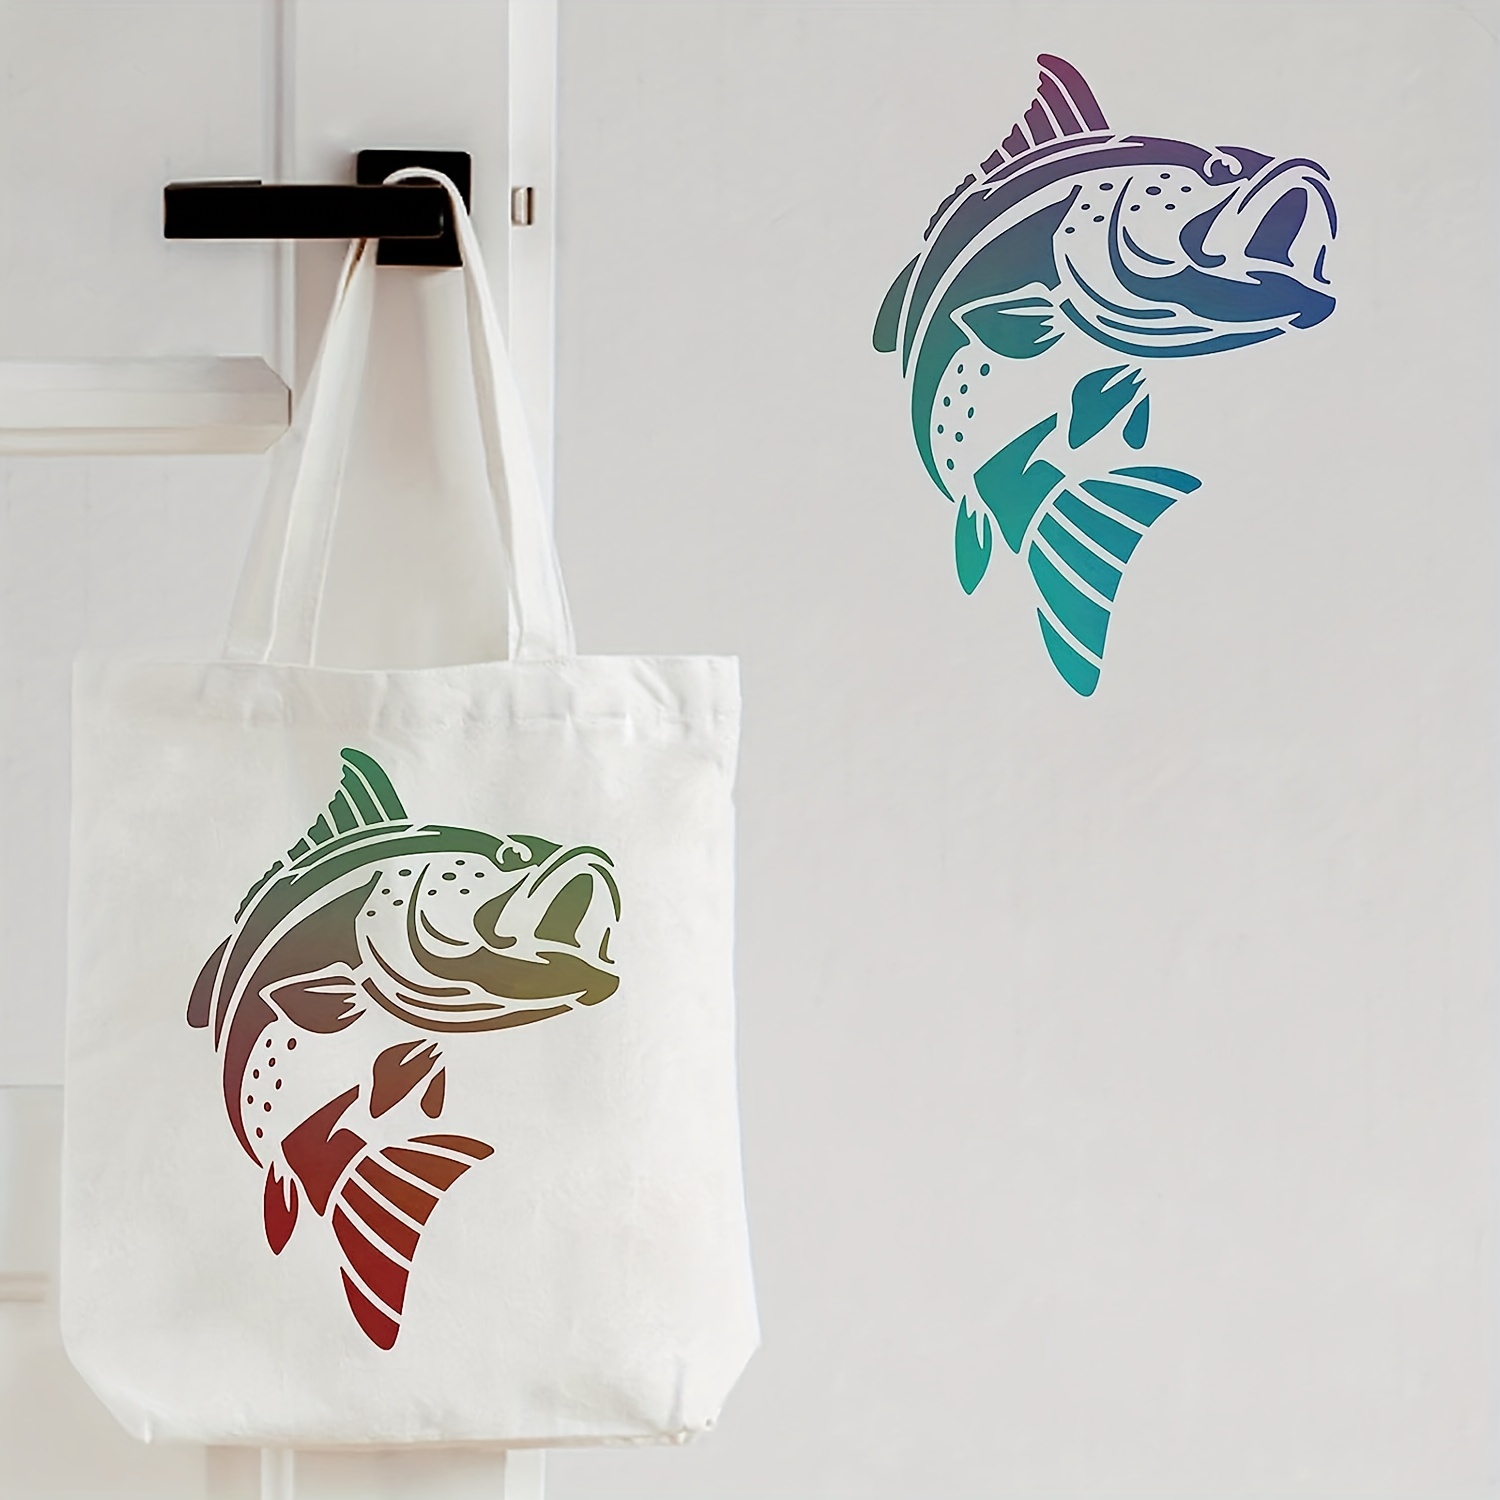 Trout Fish Stencil - Fish Stencil Art, Fish Design, Trout Stencil, Fish,  Fish Stencil Print : Arts, Crafts & Sewing 